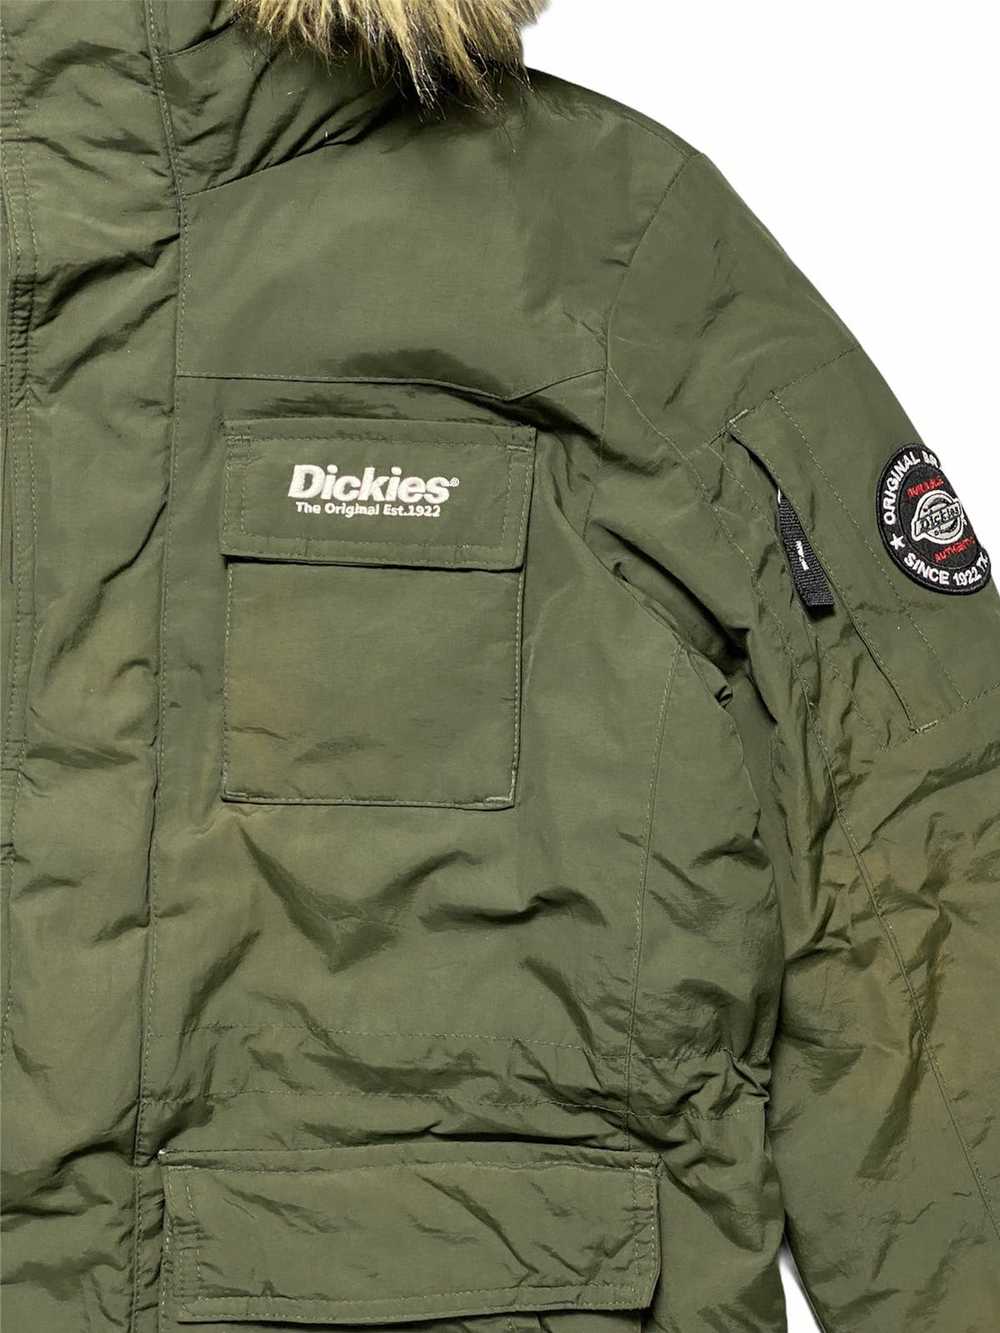 Vintage - Dickies Puffed Parkas Hoodie Jacket - image 3